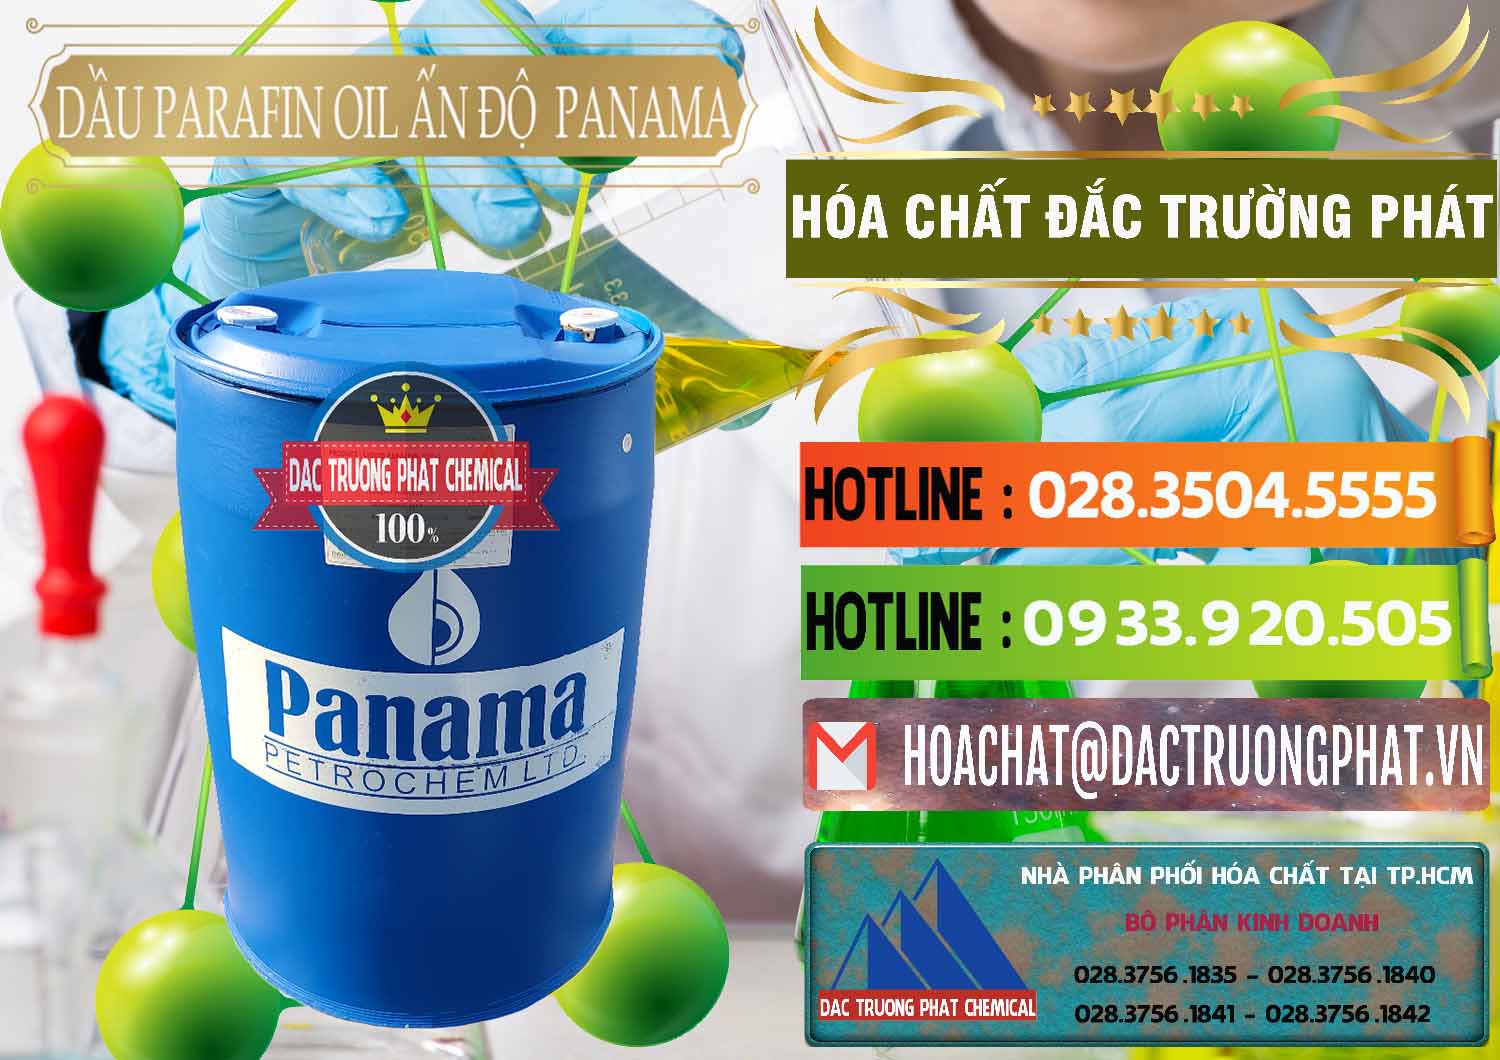 Nơi phân phối - bán Dầu Parafin Oil Panama Ấn Độ India - 0061 - Cty kinh doanh và cung cấp hóa chất tại TP.HCM - cungcaphoachat.com.vn